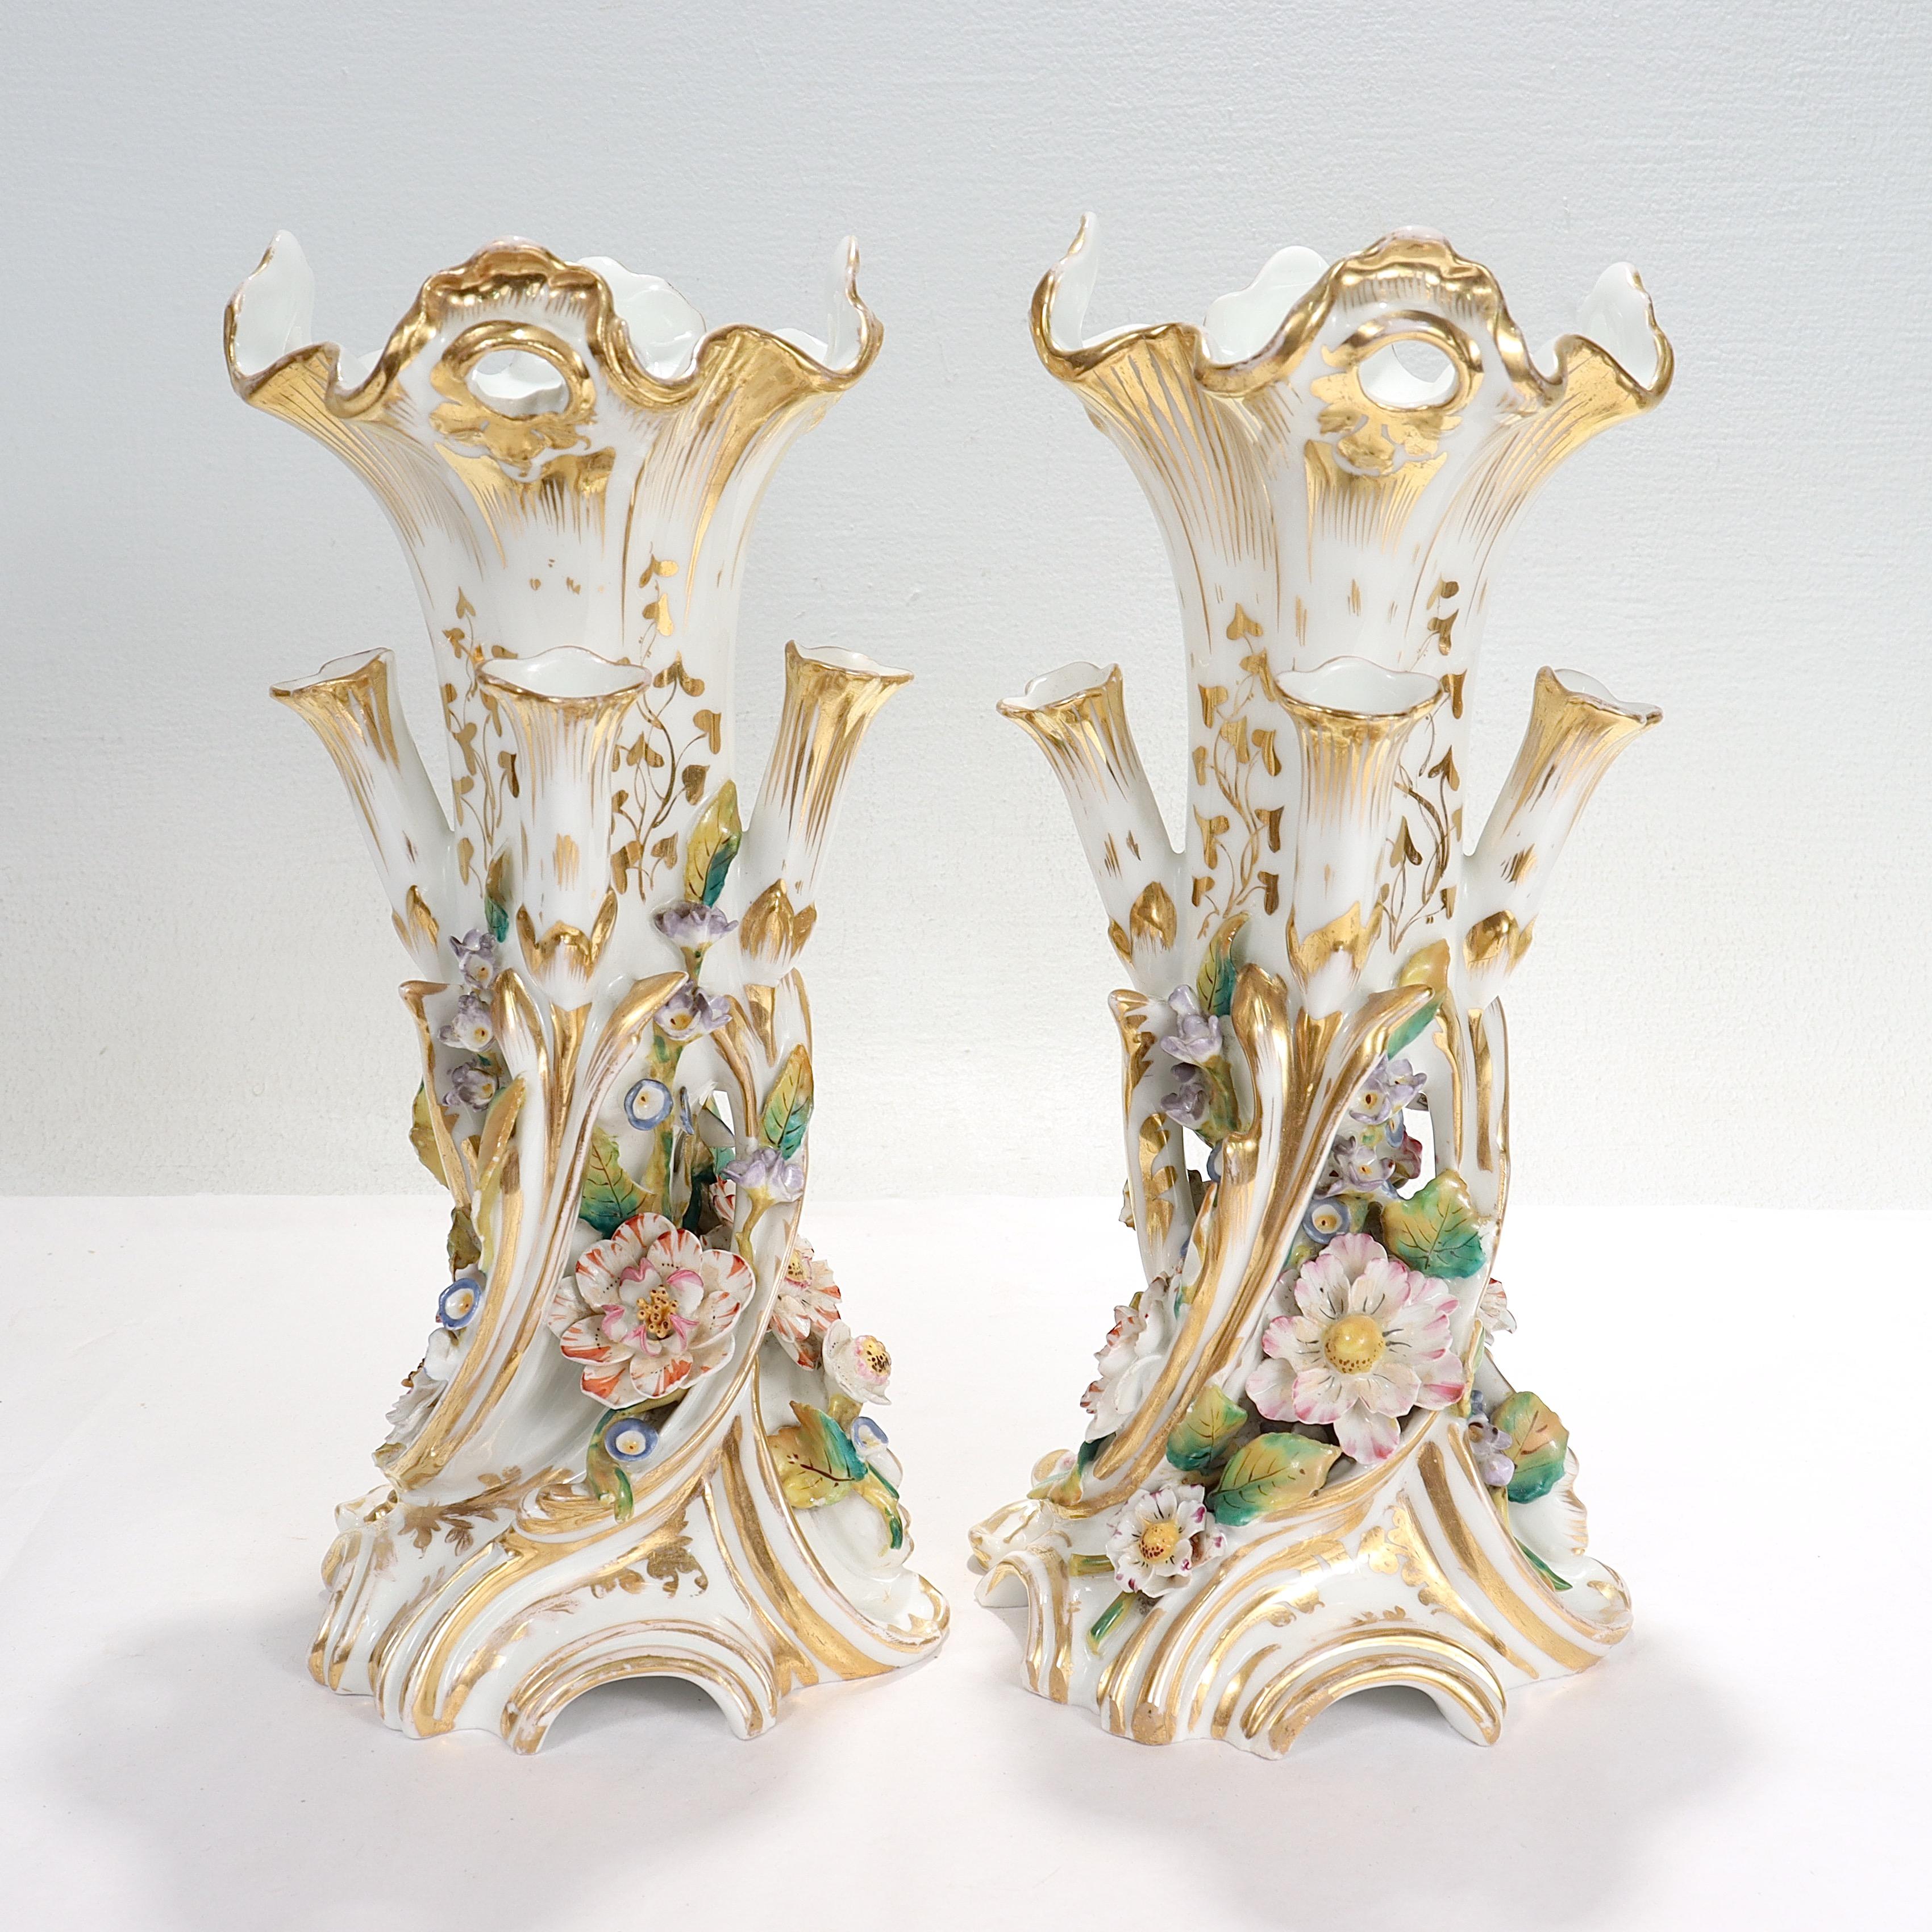 Ein schönes Paar antiker Blumenvasen aus Porzellan.

Nach dem Vorbild von Jacob Petit.

Jeweils mit einer großen zentralen Vase, umgeben von 4 kleineren, integrierten Knospenvasen.

Mit umfangreicher Vergoldung und floralem Dekor.

Einfach ein